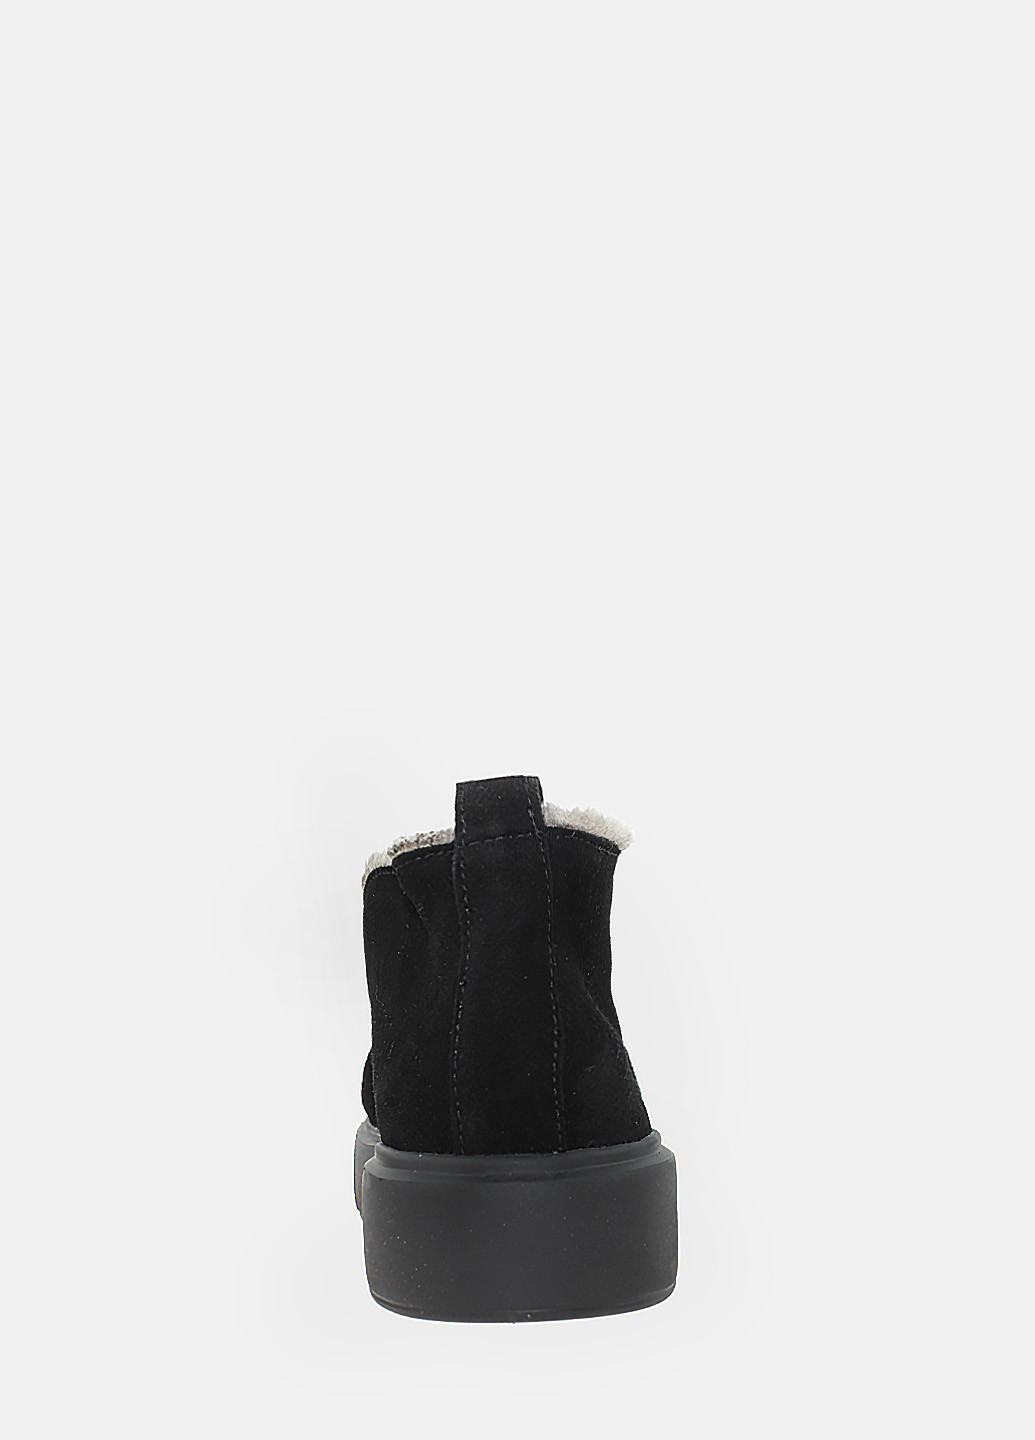 Зимние ботинки rb59314-11 черный Brionis из натуральной замши